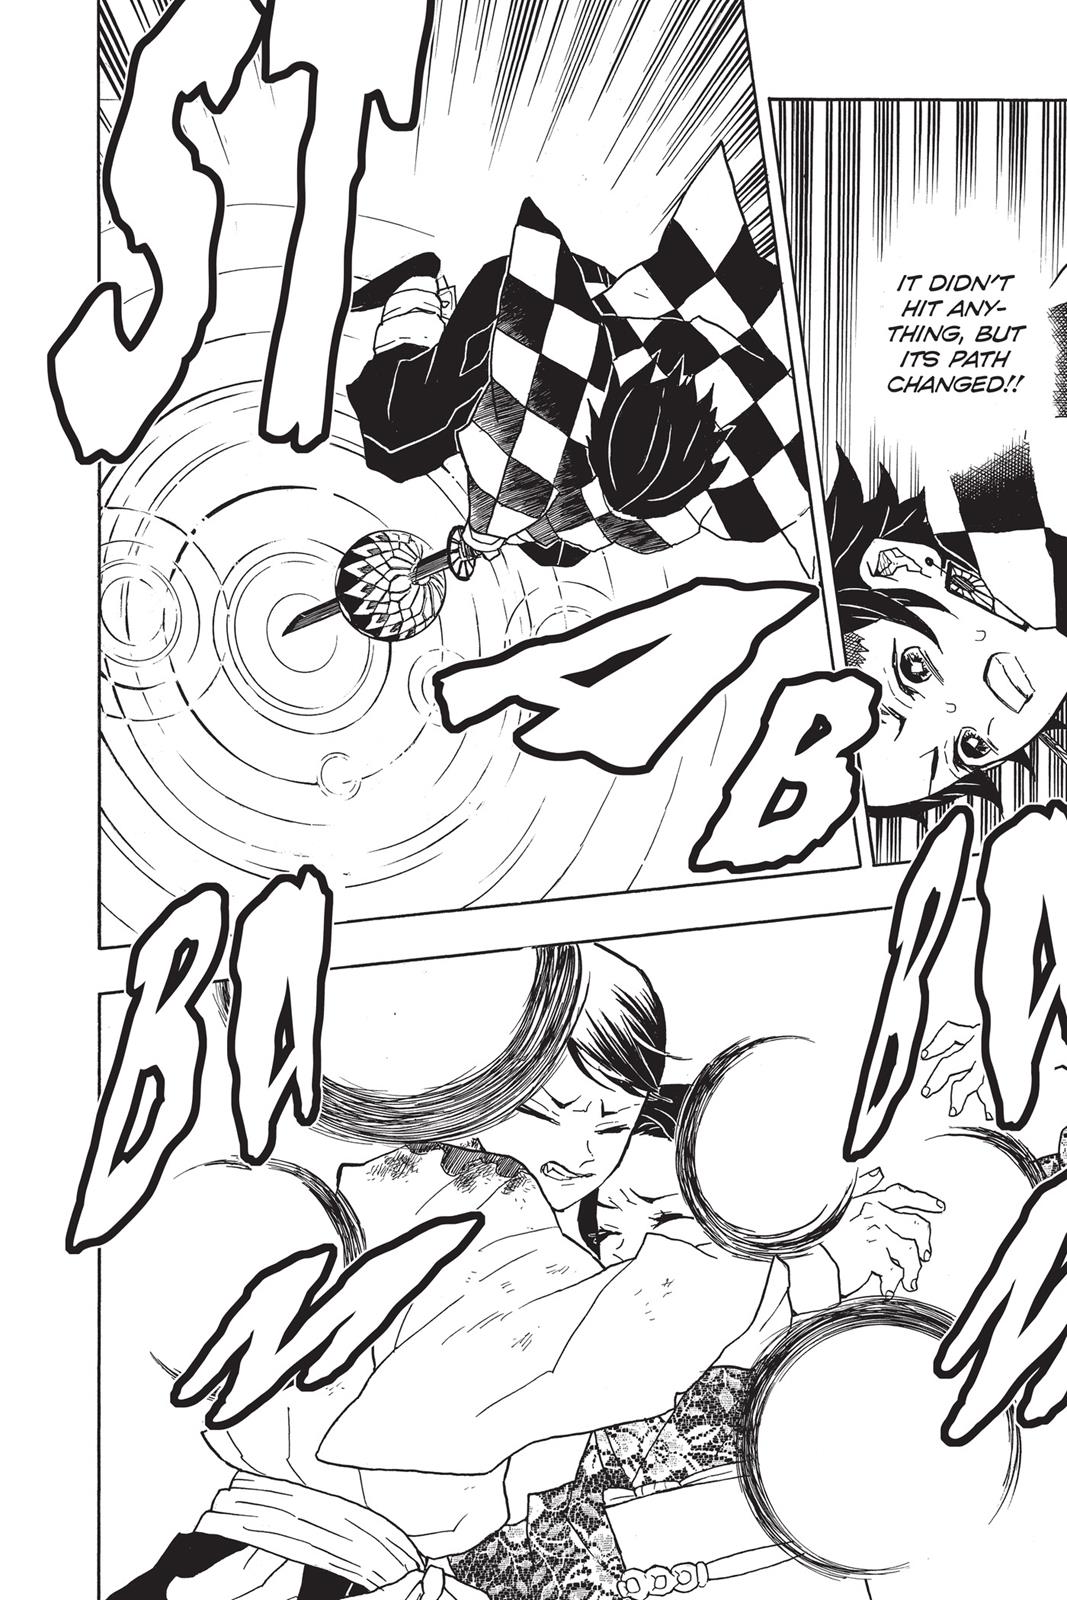 Demon Slayer Manga Manga Chapter - 16 - image 18